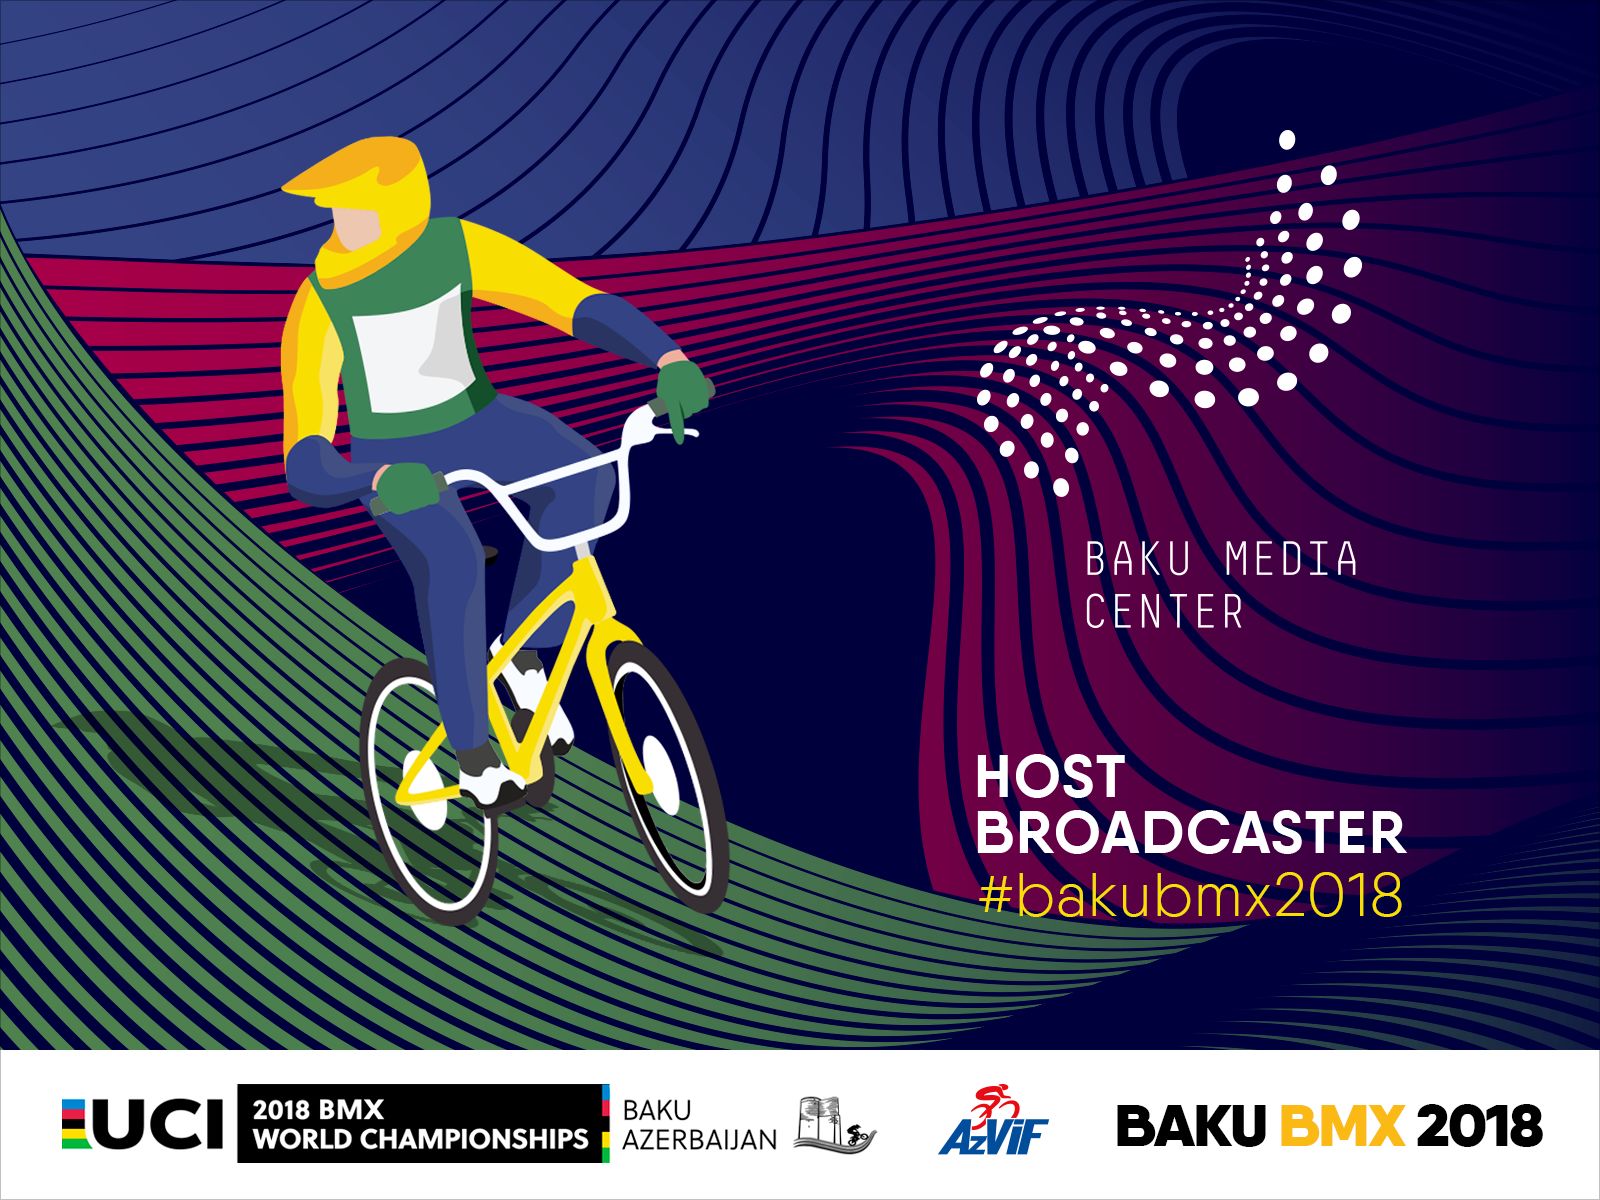 Baku Media Center организует съемки и видеотрансляцию Чемпионата мира по велоспорту 2018 UCI BMX